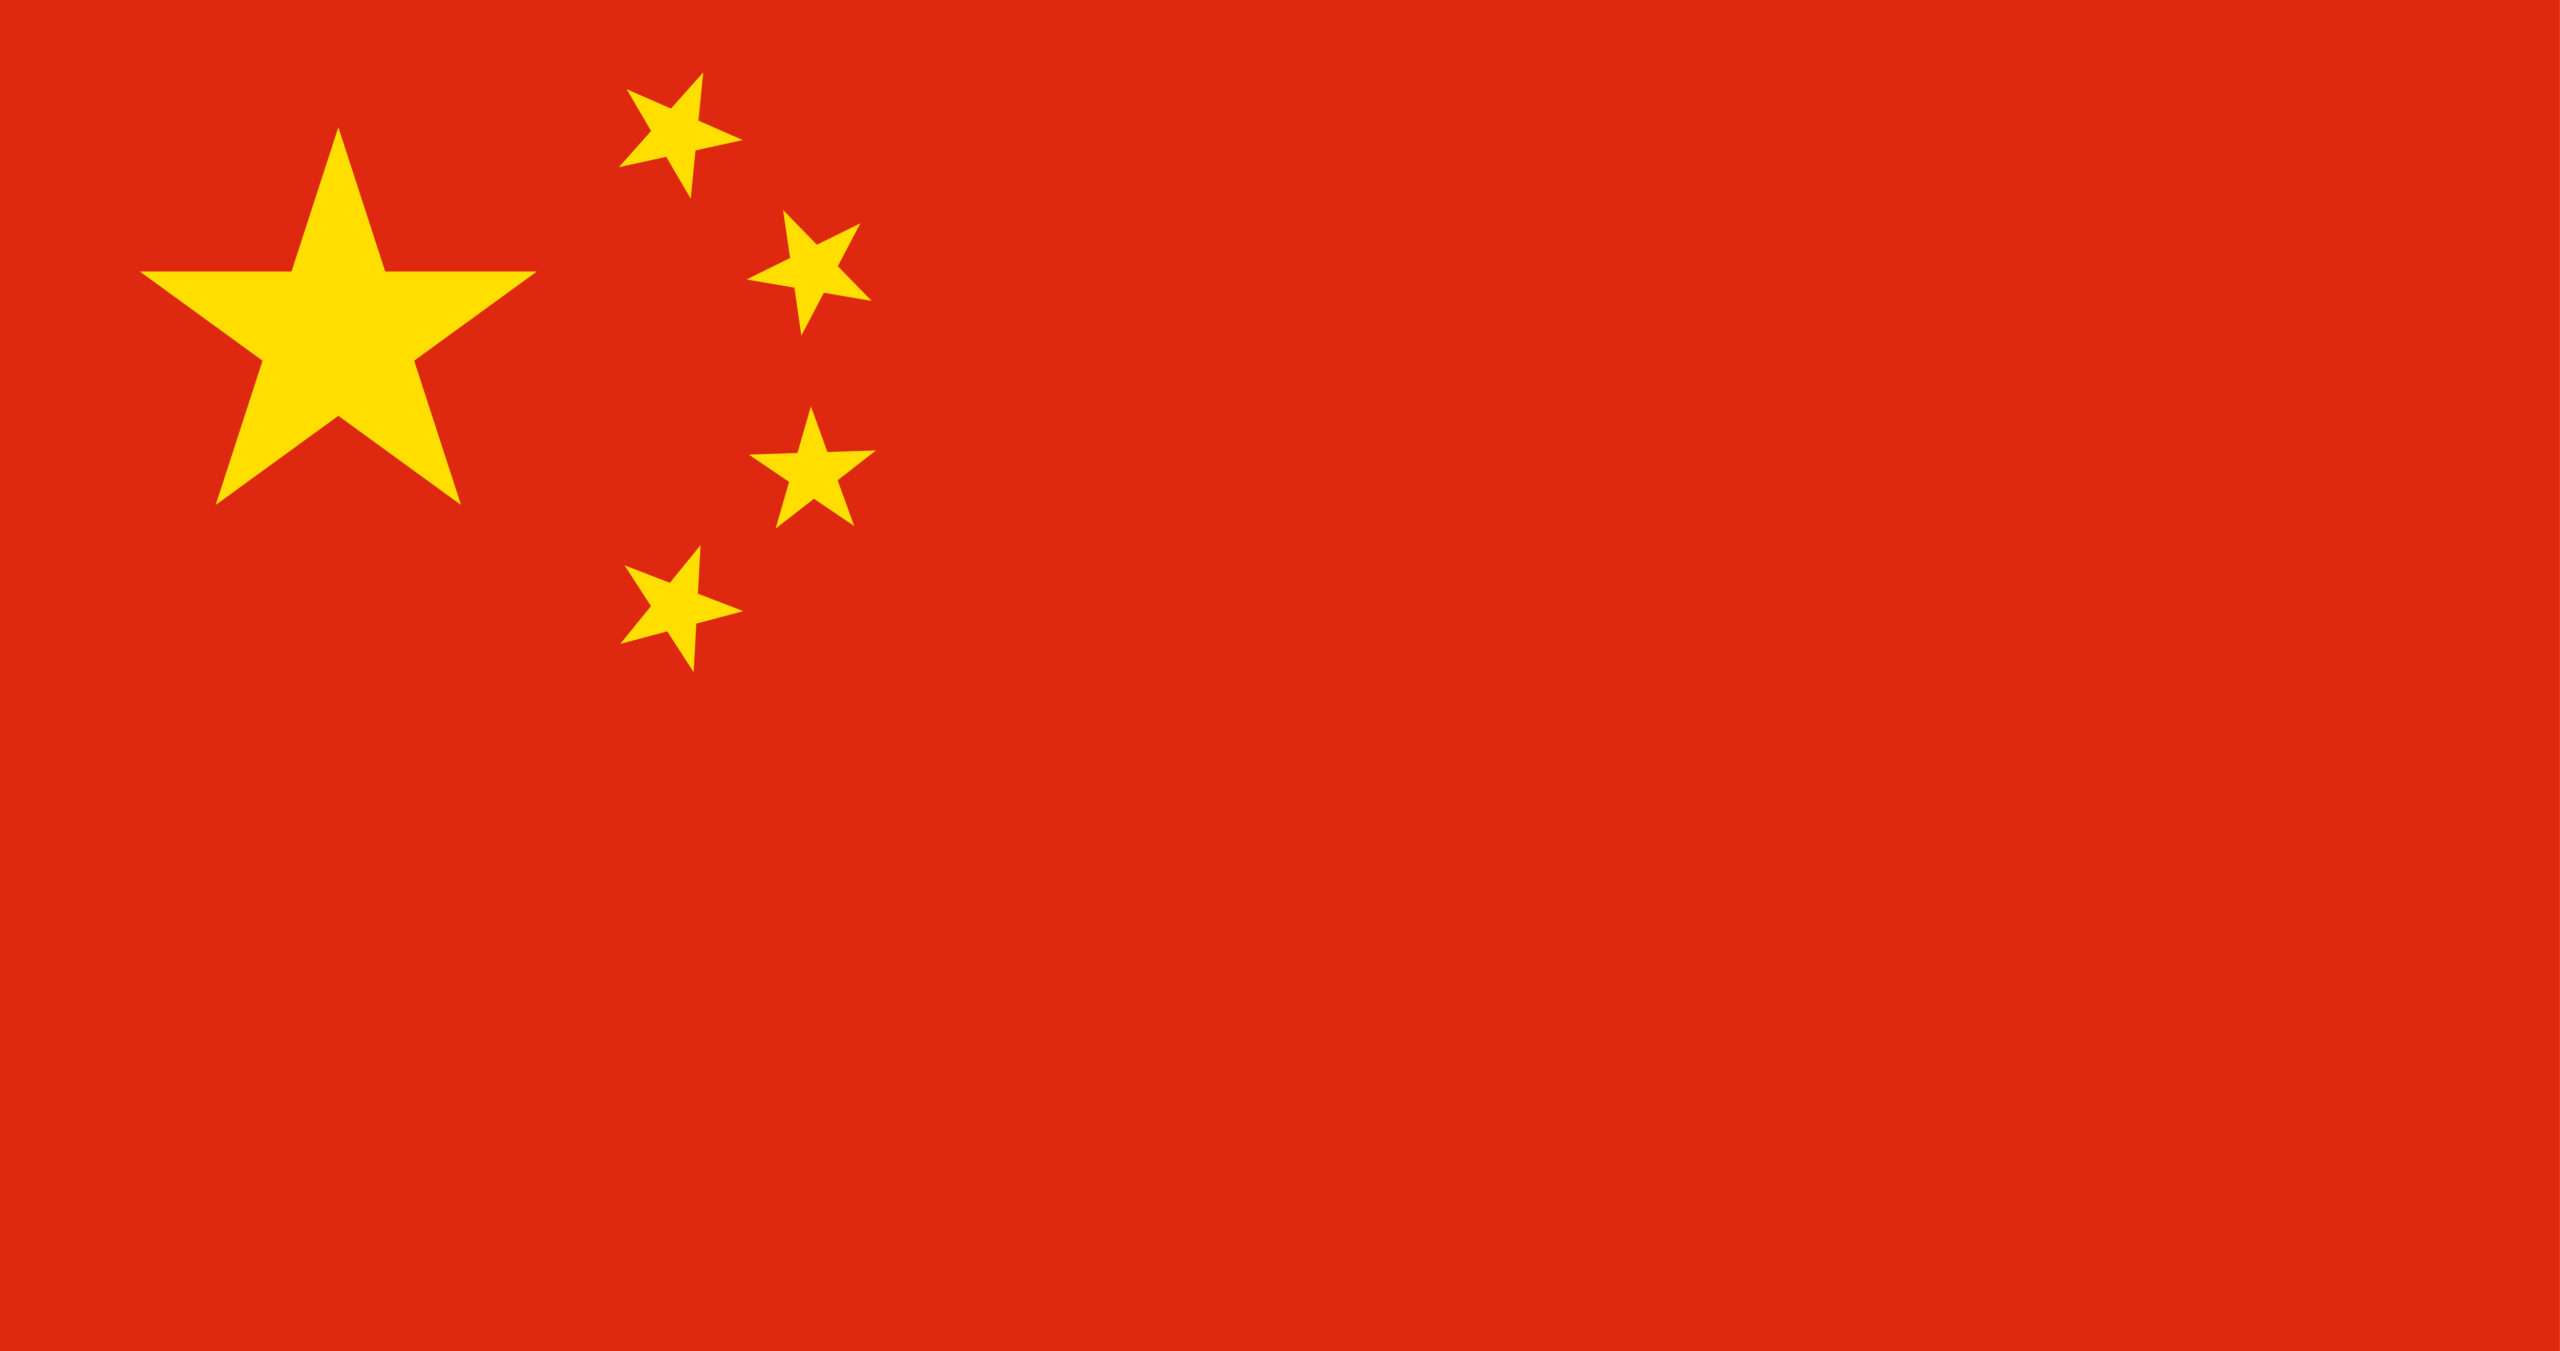 Illustration of China flag